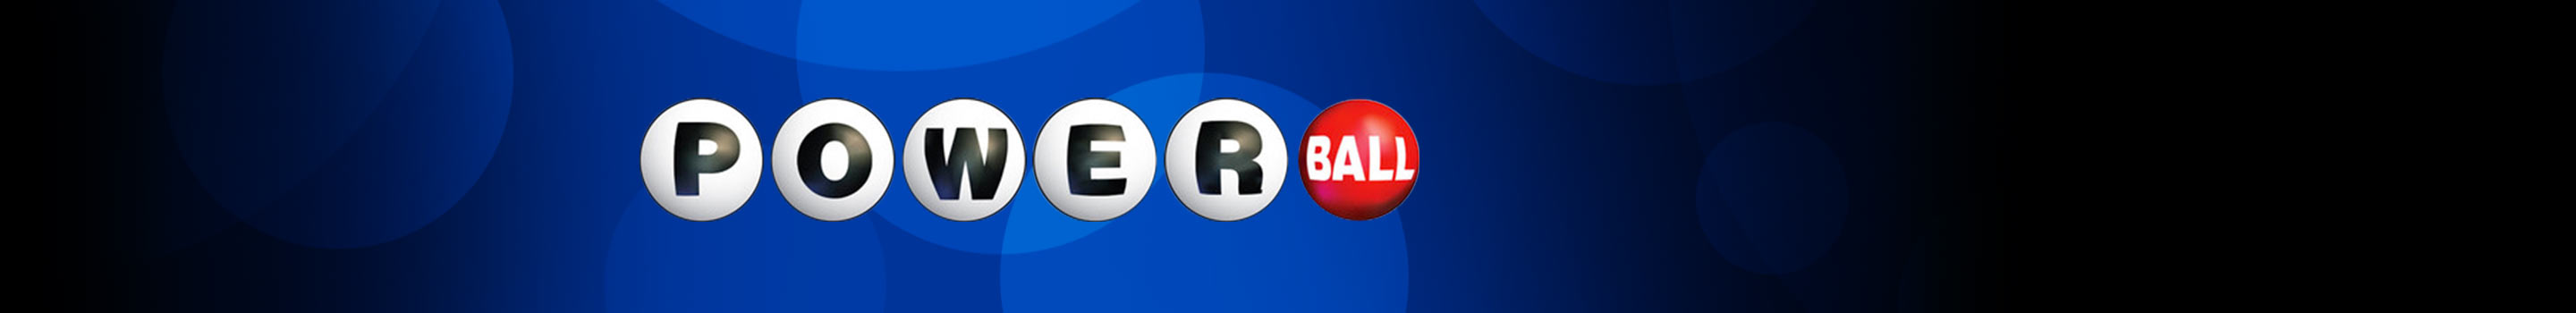 Powerball – verdens største lotteri